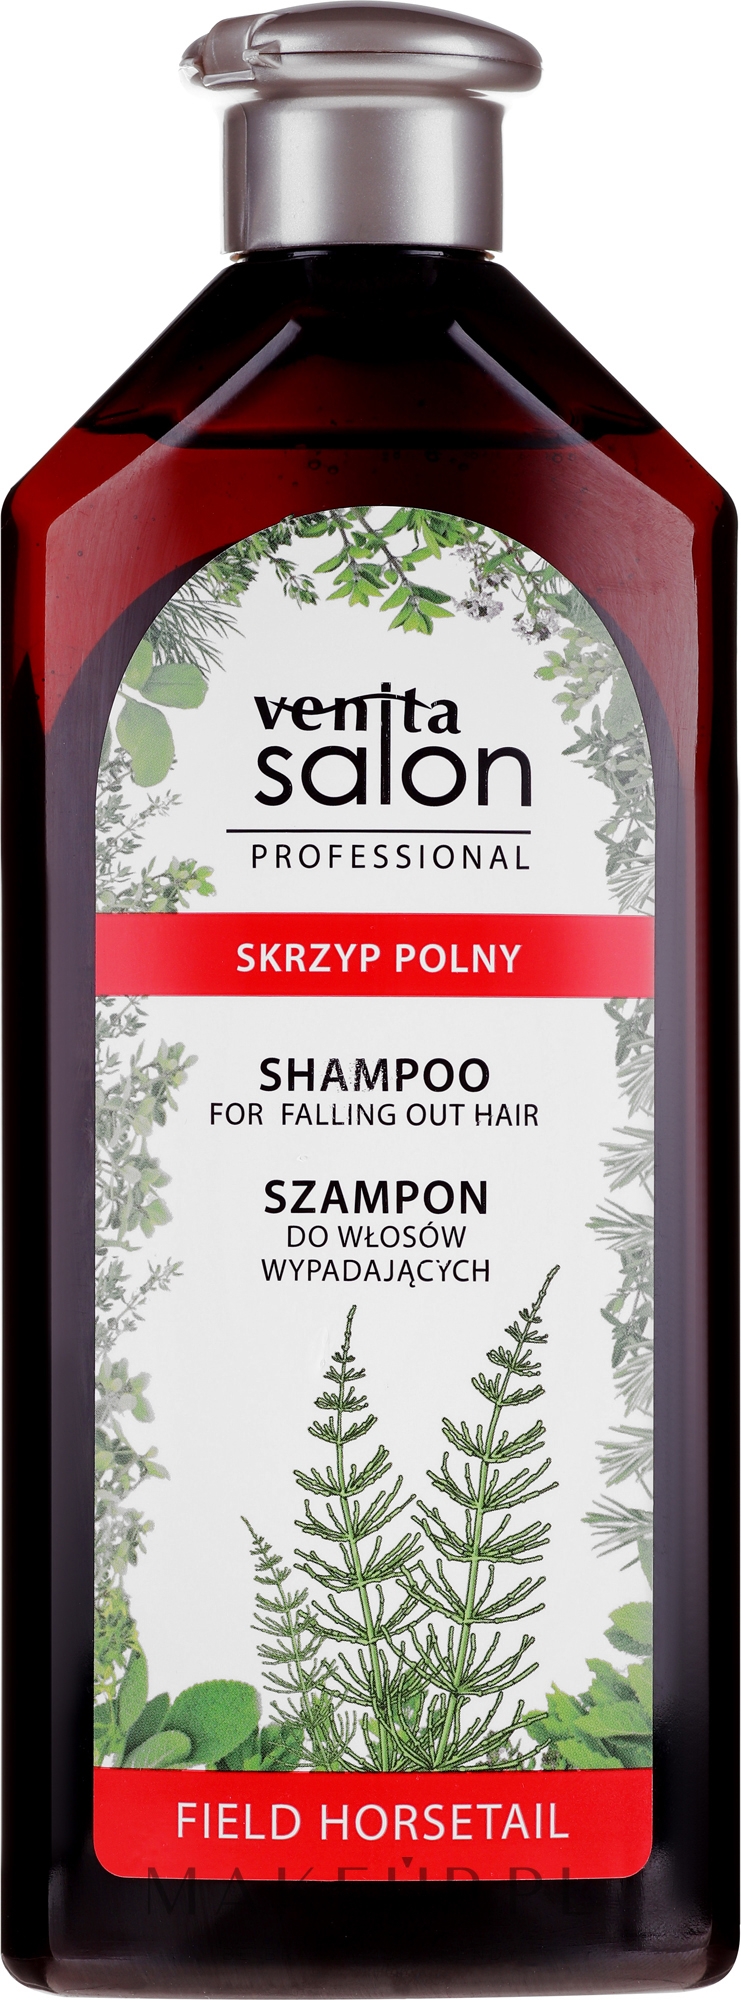 reklamowany szampon do włosów ze skrzypem